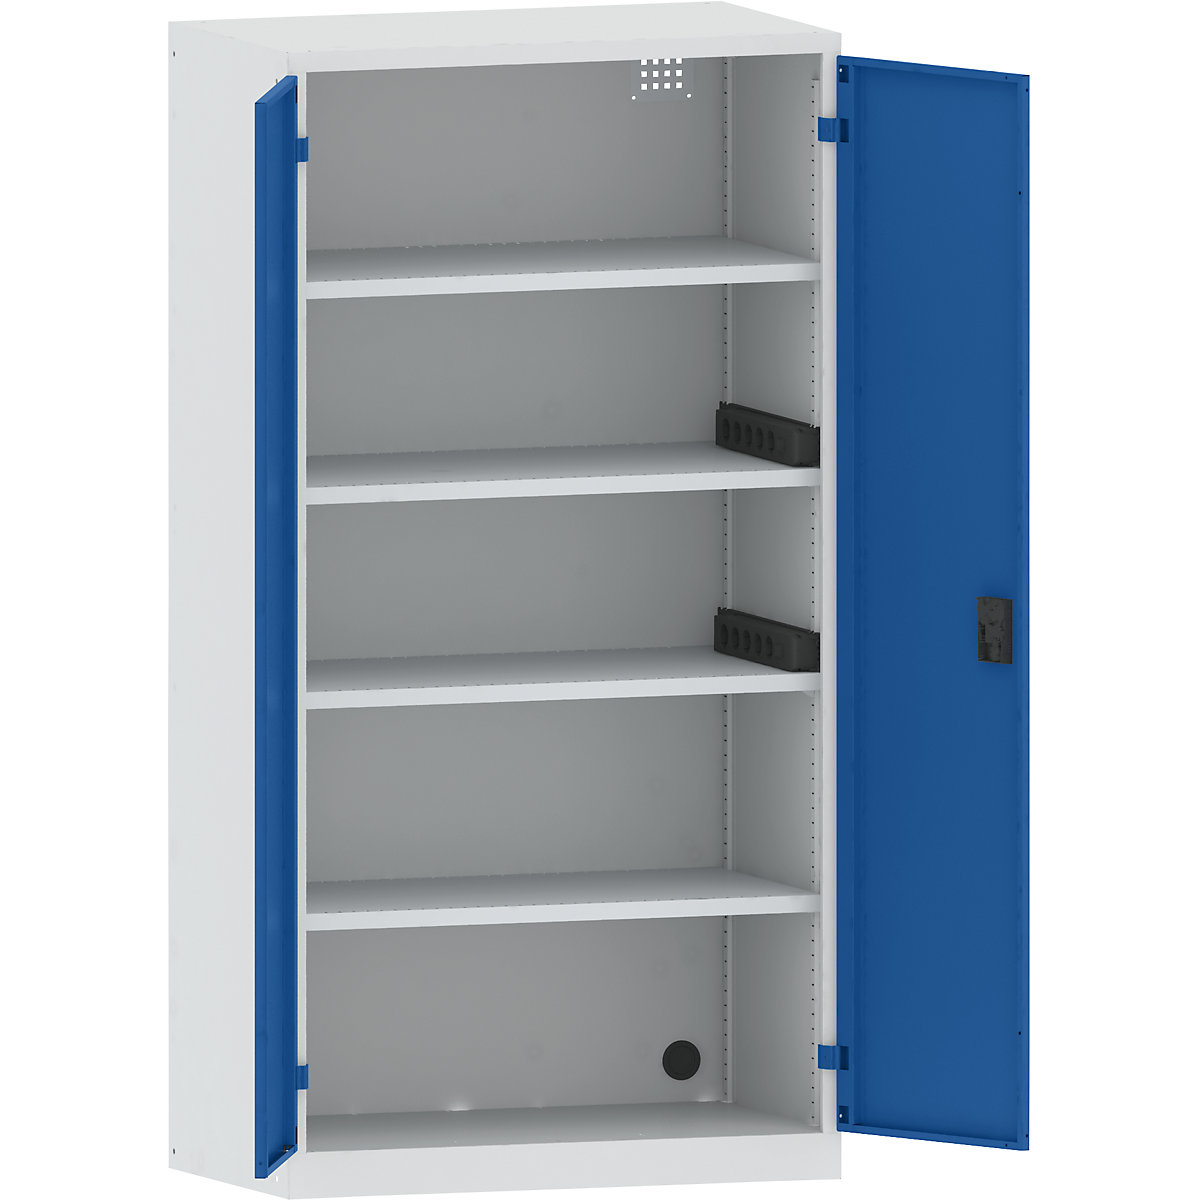 LISTA – Armario cargador de baterías, 4 baldas, puertas de chapa maciza, 2 regletas de enchufes laterales, gris / azul